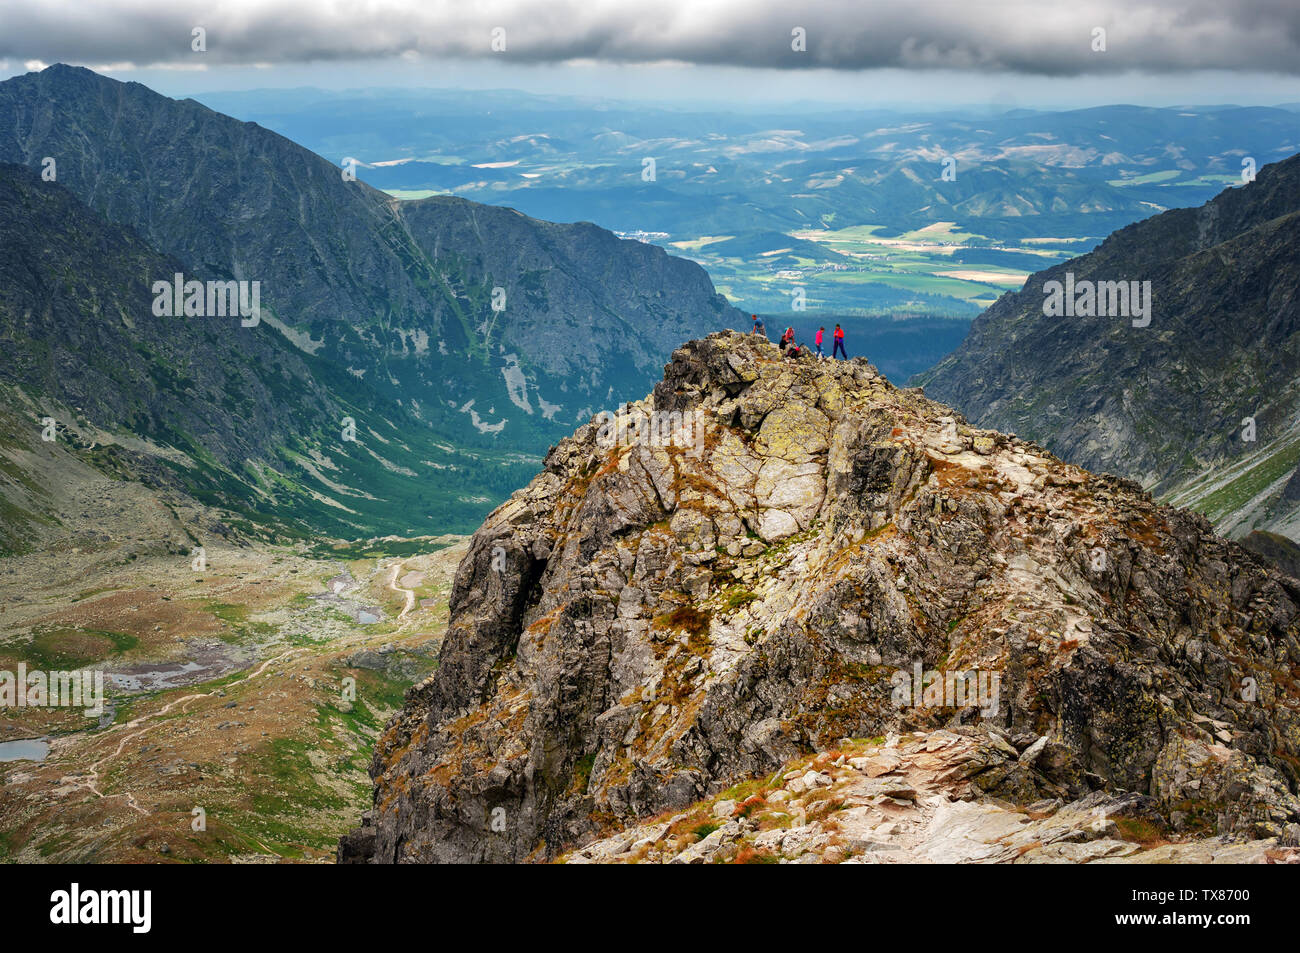 Mountain Alti Tatra National Park Foto Stock